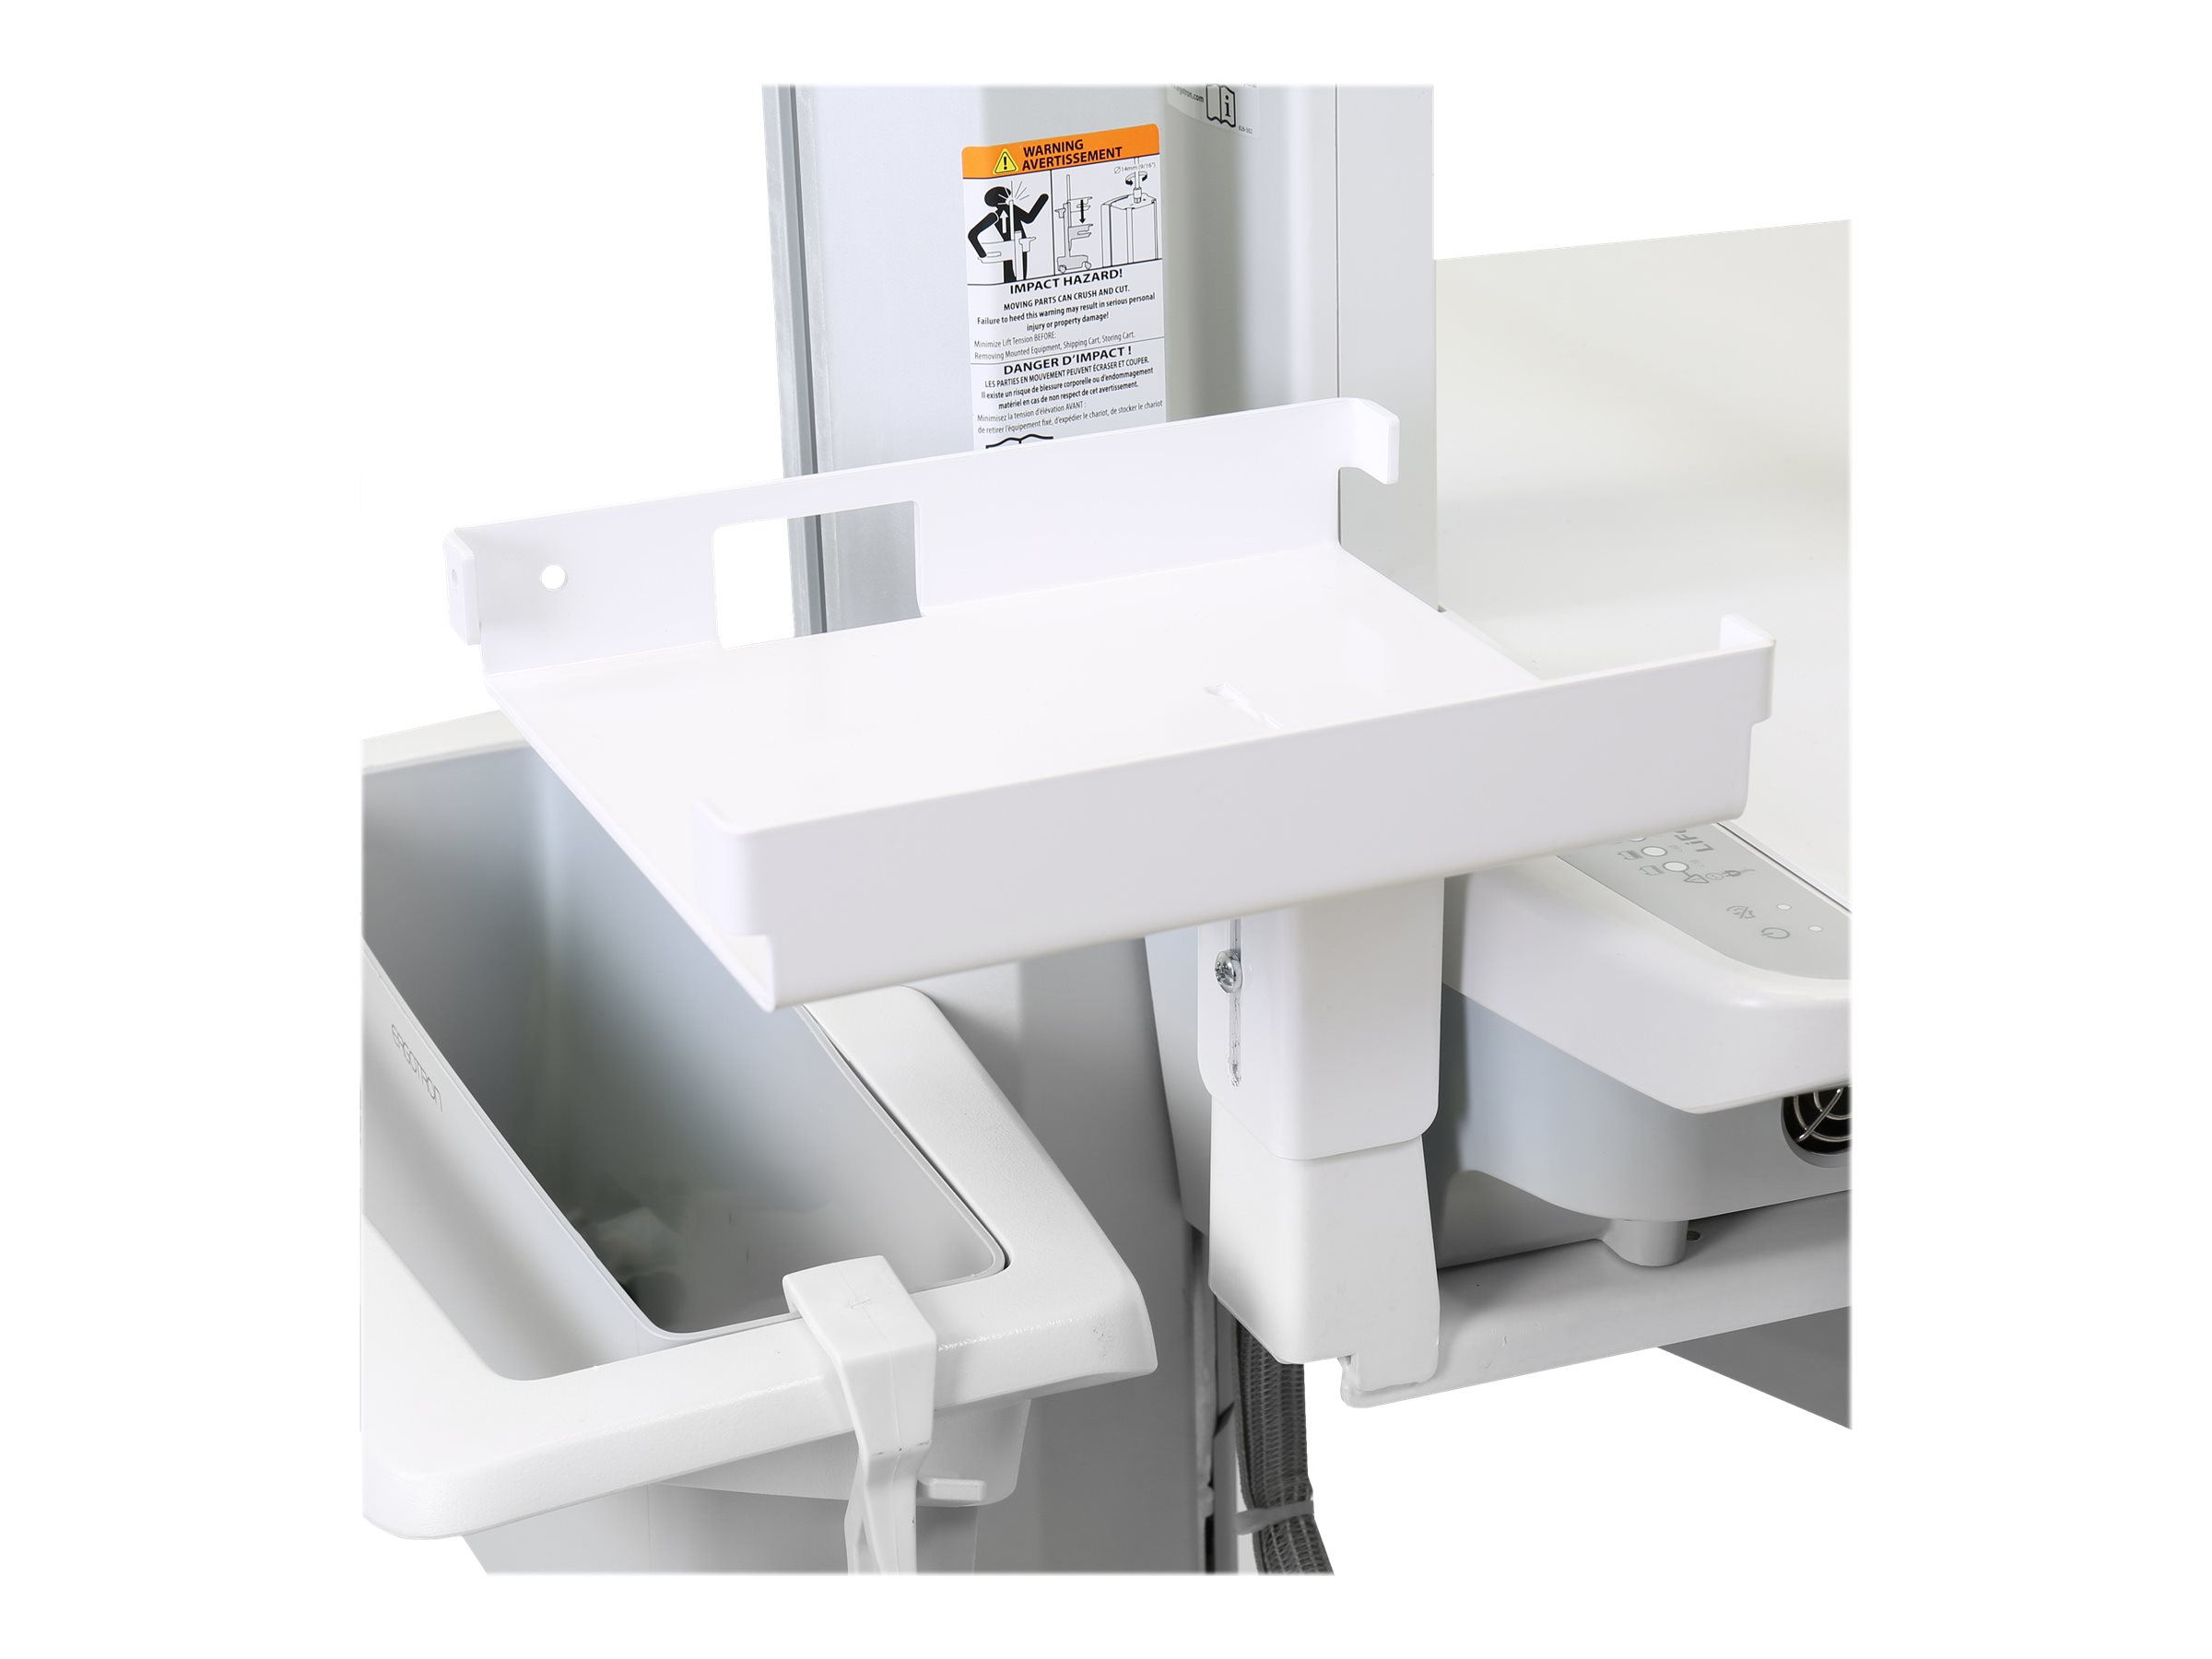 Ergotron Montagekomponente (Klammer, Regal) für Drucker